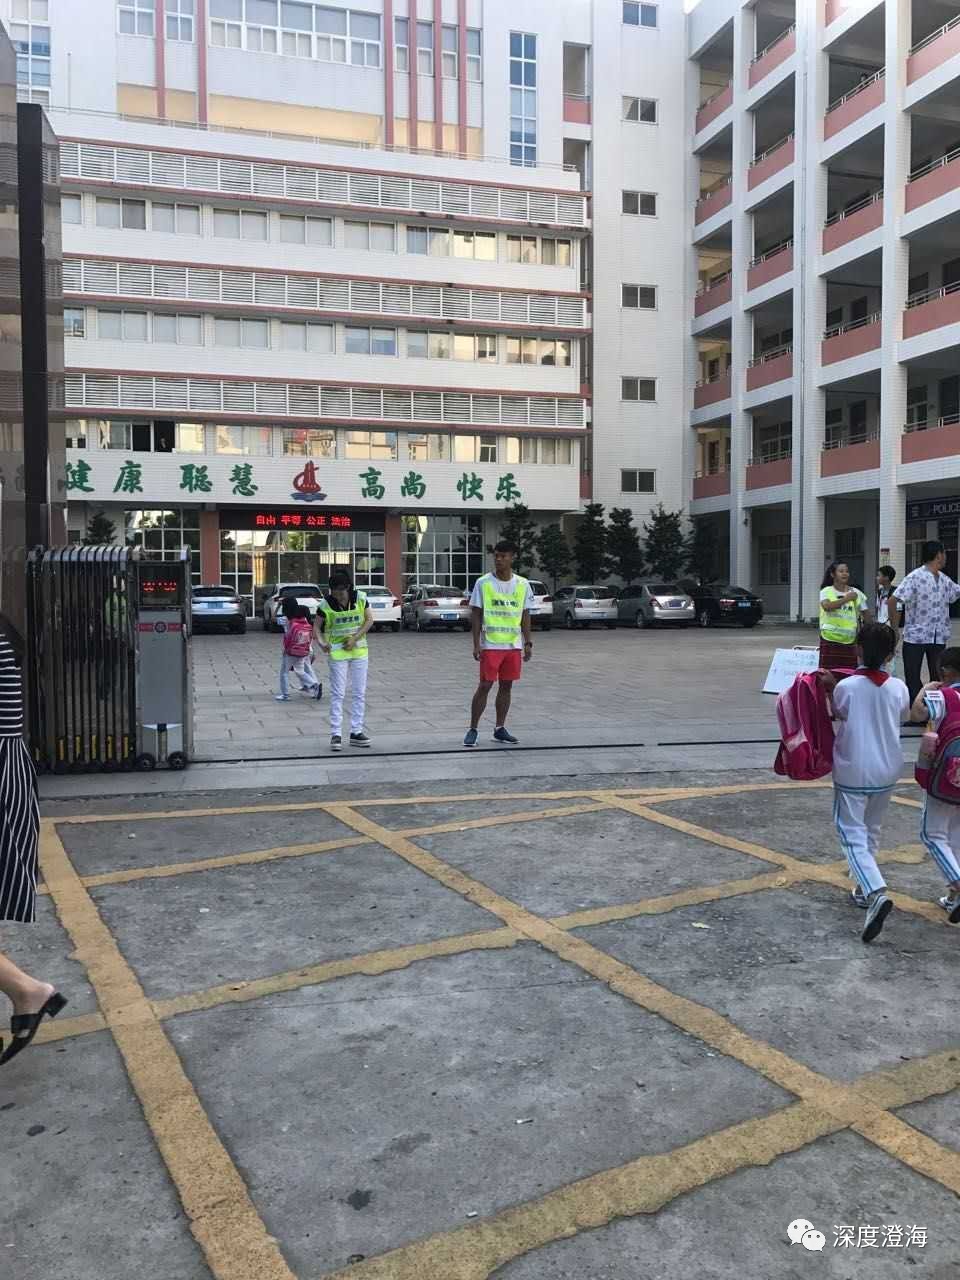 今天澄海各大学校路口来了不少交警,究竟发生什么事情?